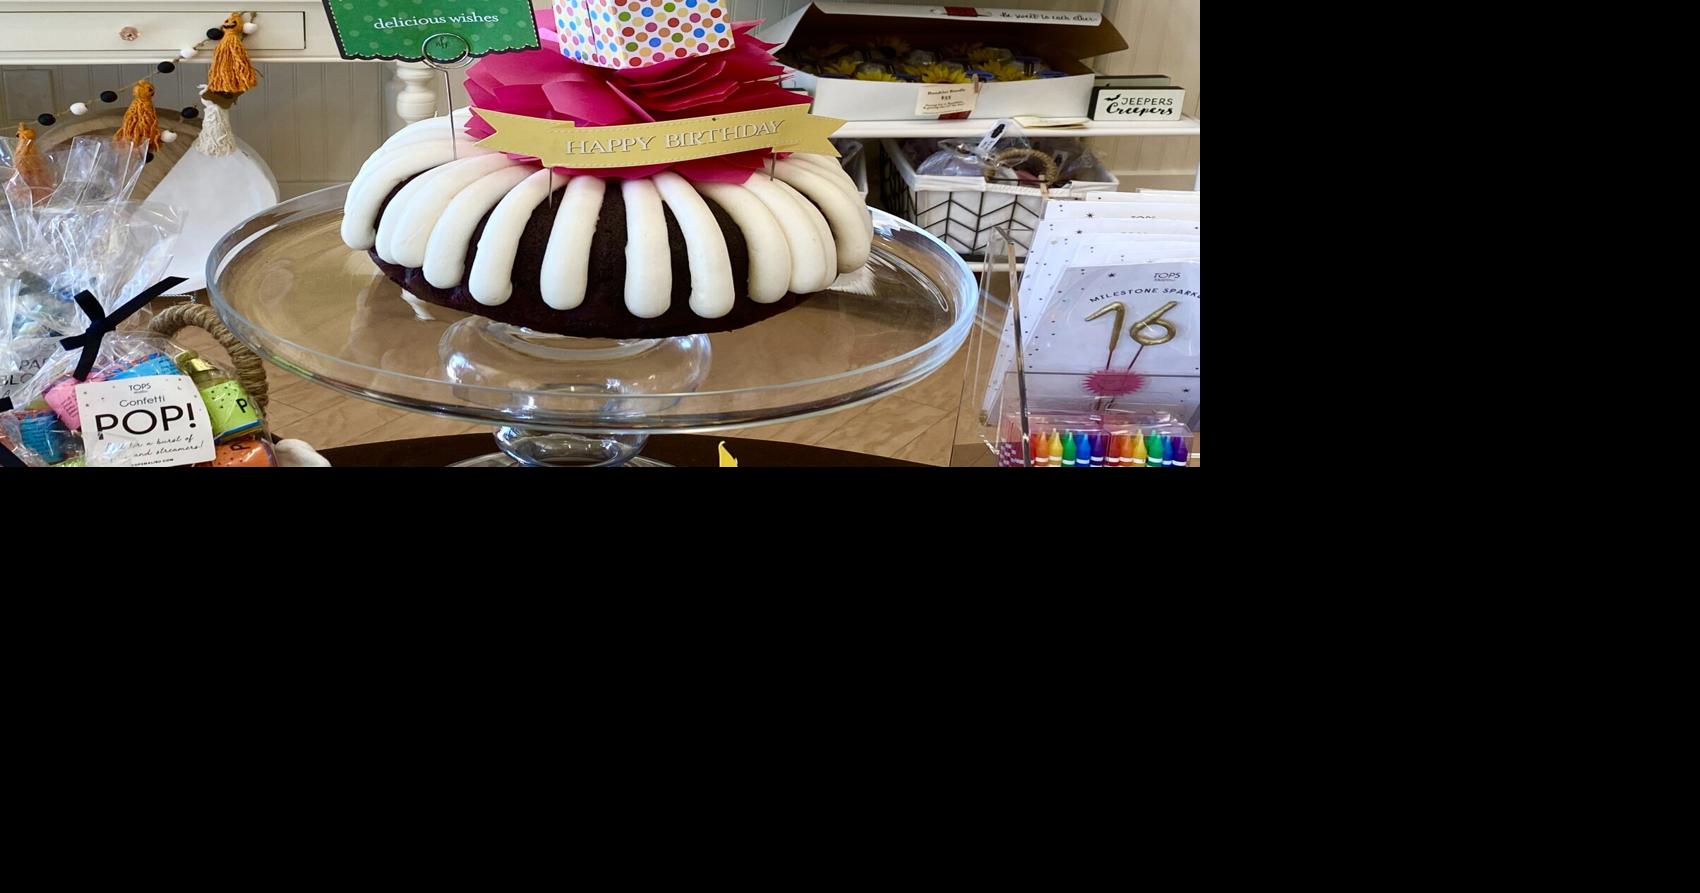 Nothing Bundt Cakes in Lynnwood celebrates opening on Feb 24